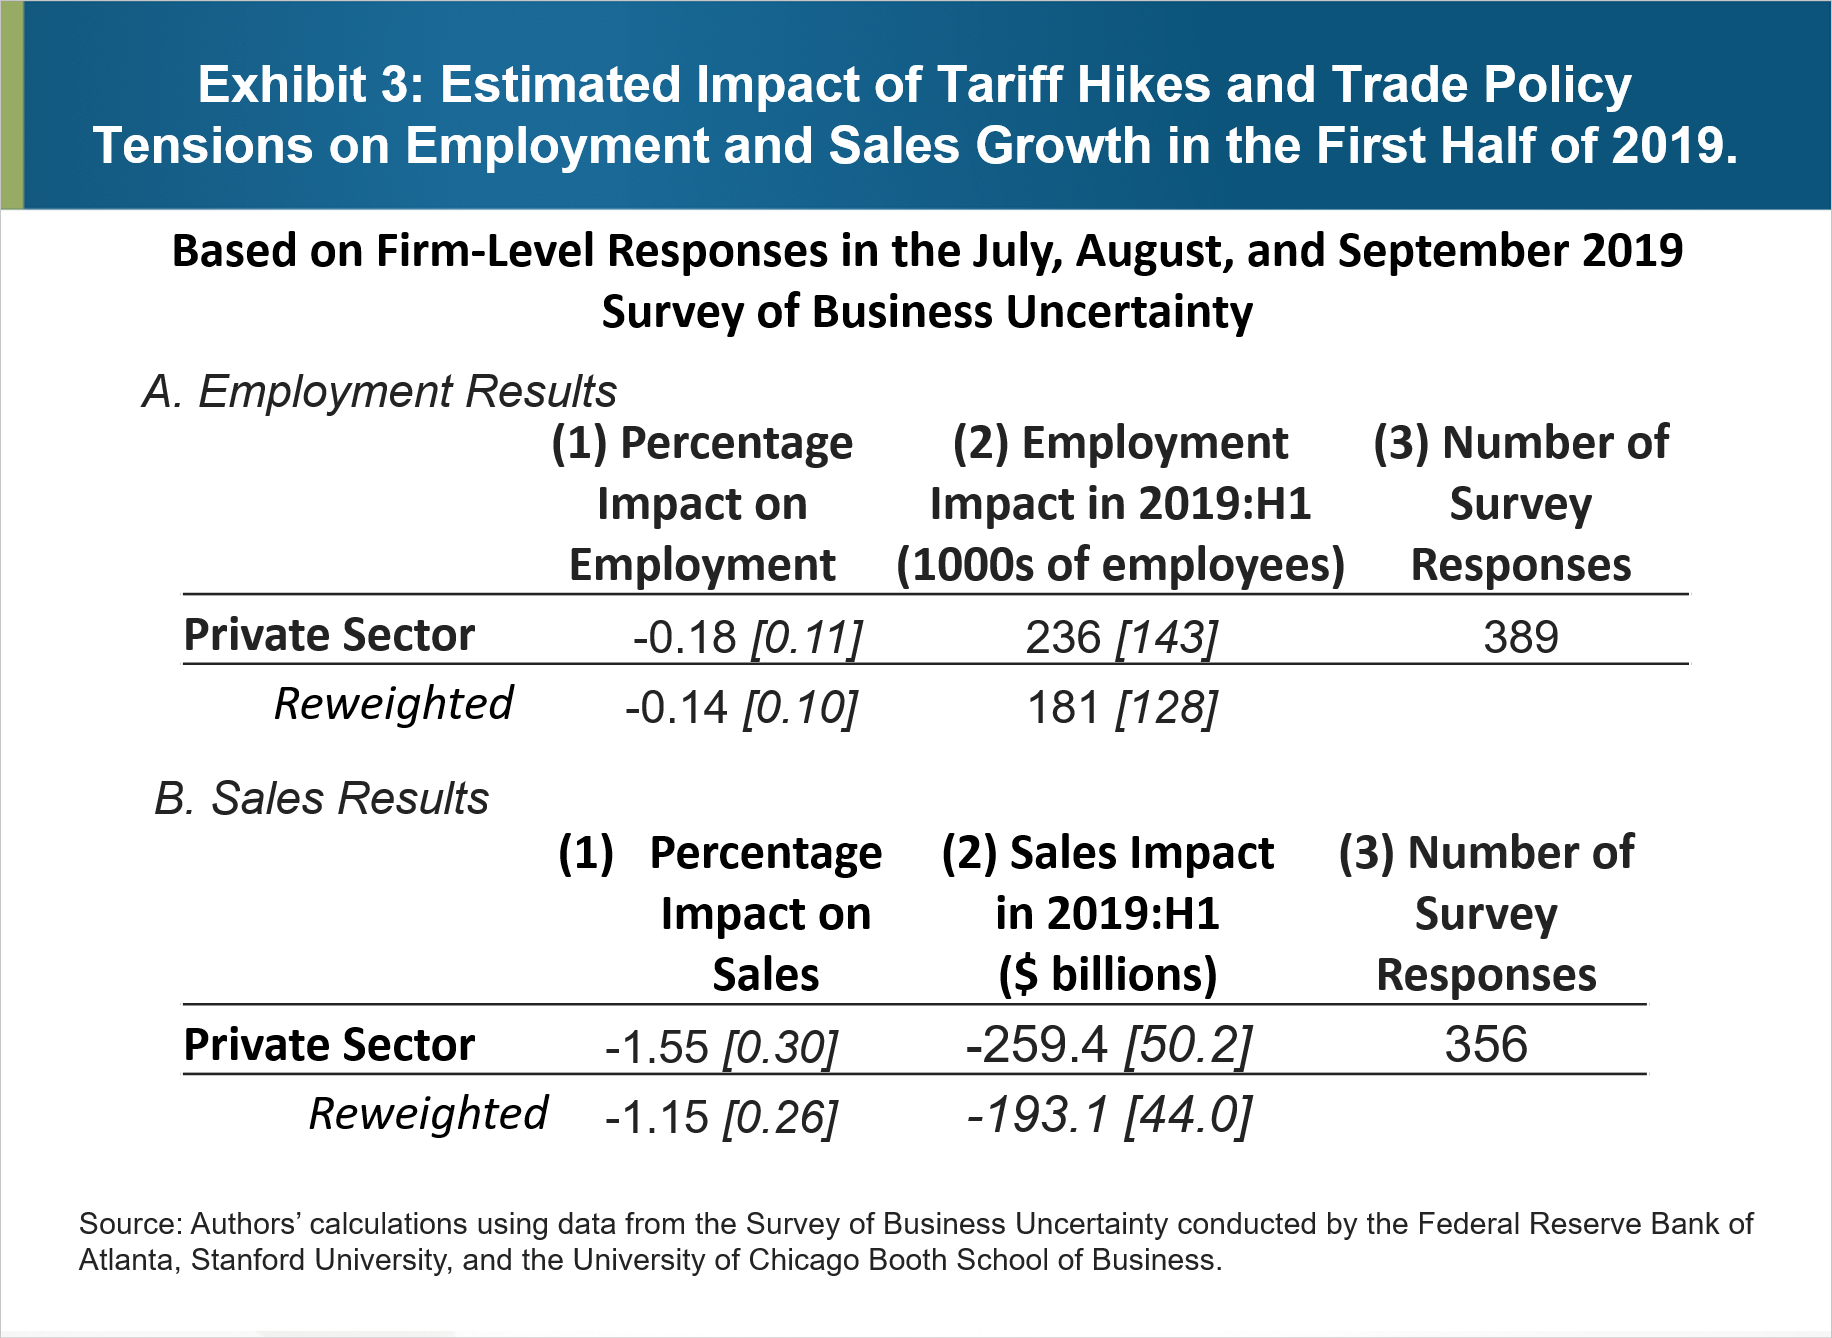 Rysunek 3: Szacunkowy wpływ podwyżek taryf i napięć w polityce handlowej na wzrost zatrudnienia i sprzedaży w pierwszej połowie 2019 r.